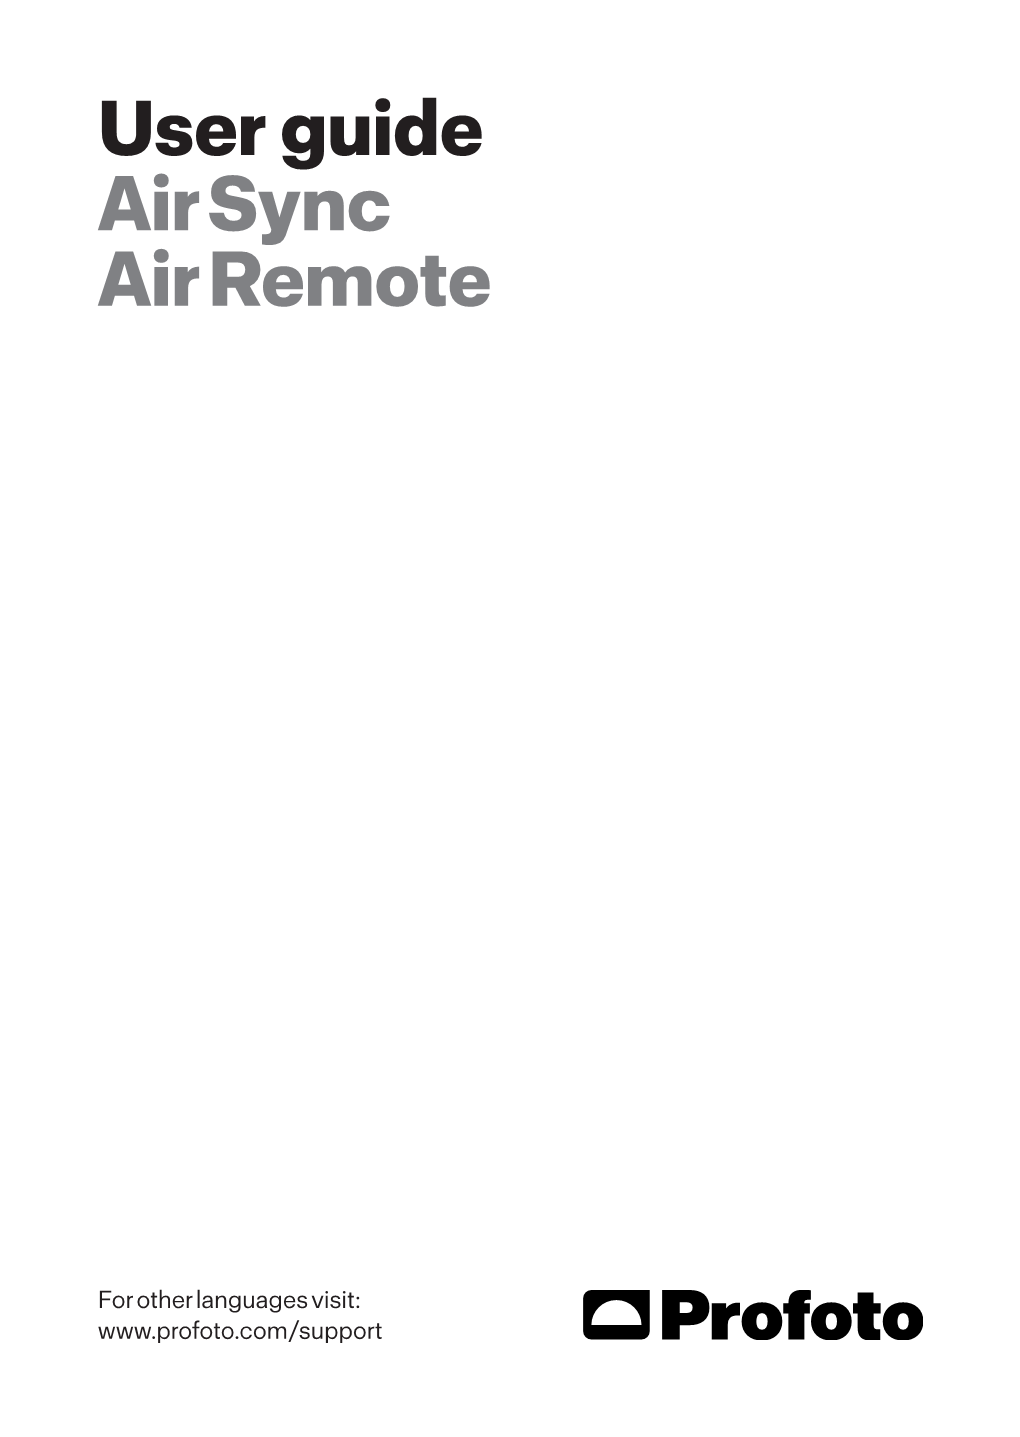 User Guide Air Sync Air Remote